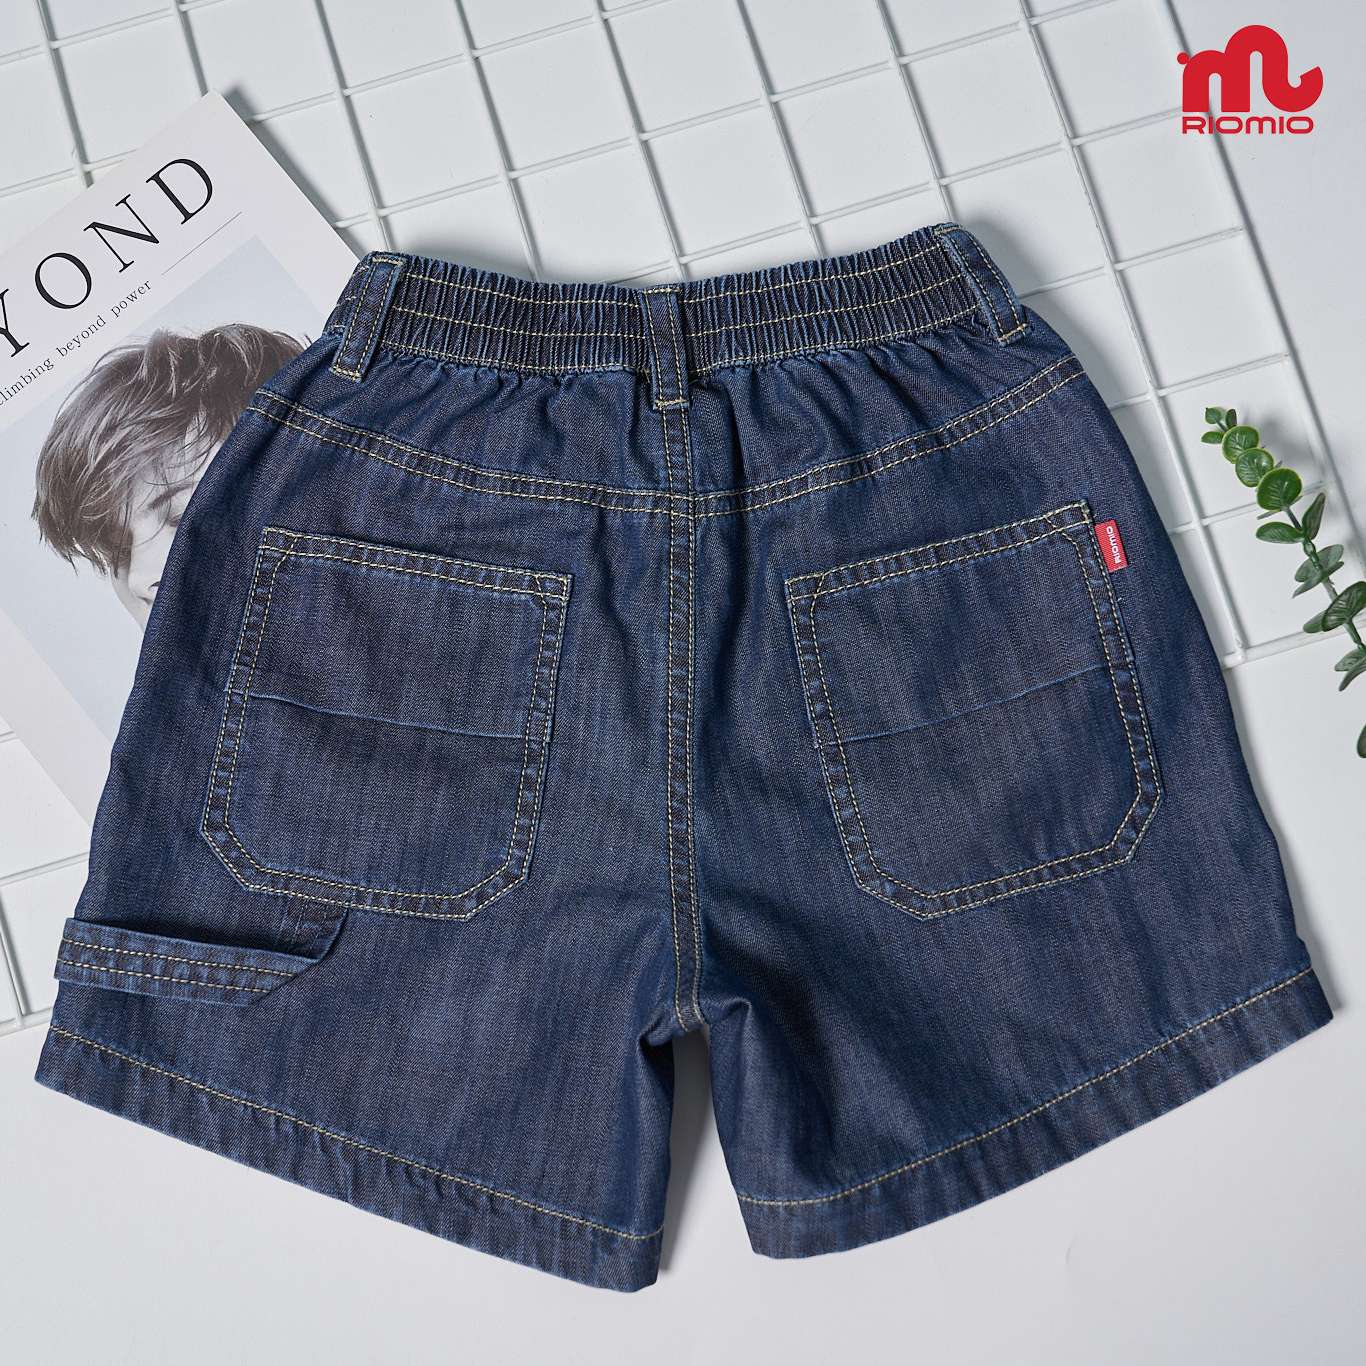 Quần short jean cho bé trai 3-11 tuổi size 15-40kg RIOMIO sooc bò ống rộng cạp chun 100% cotton - RM221